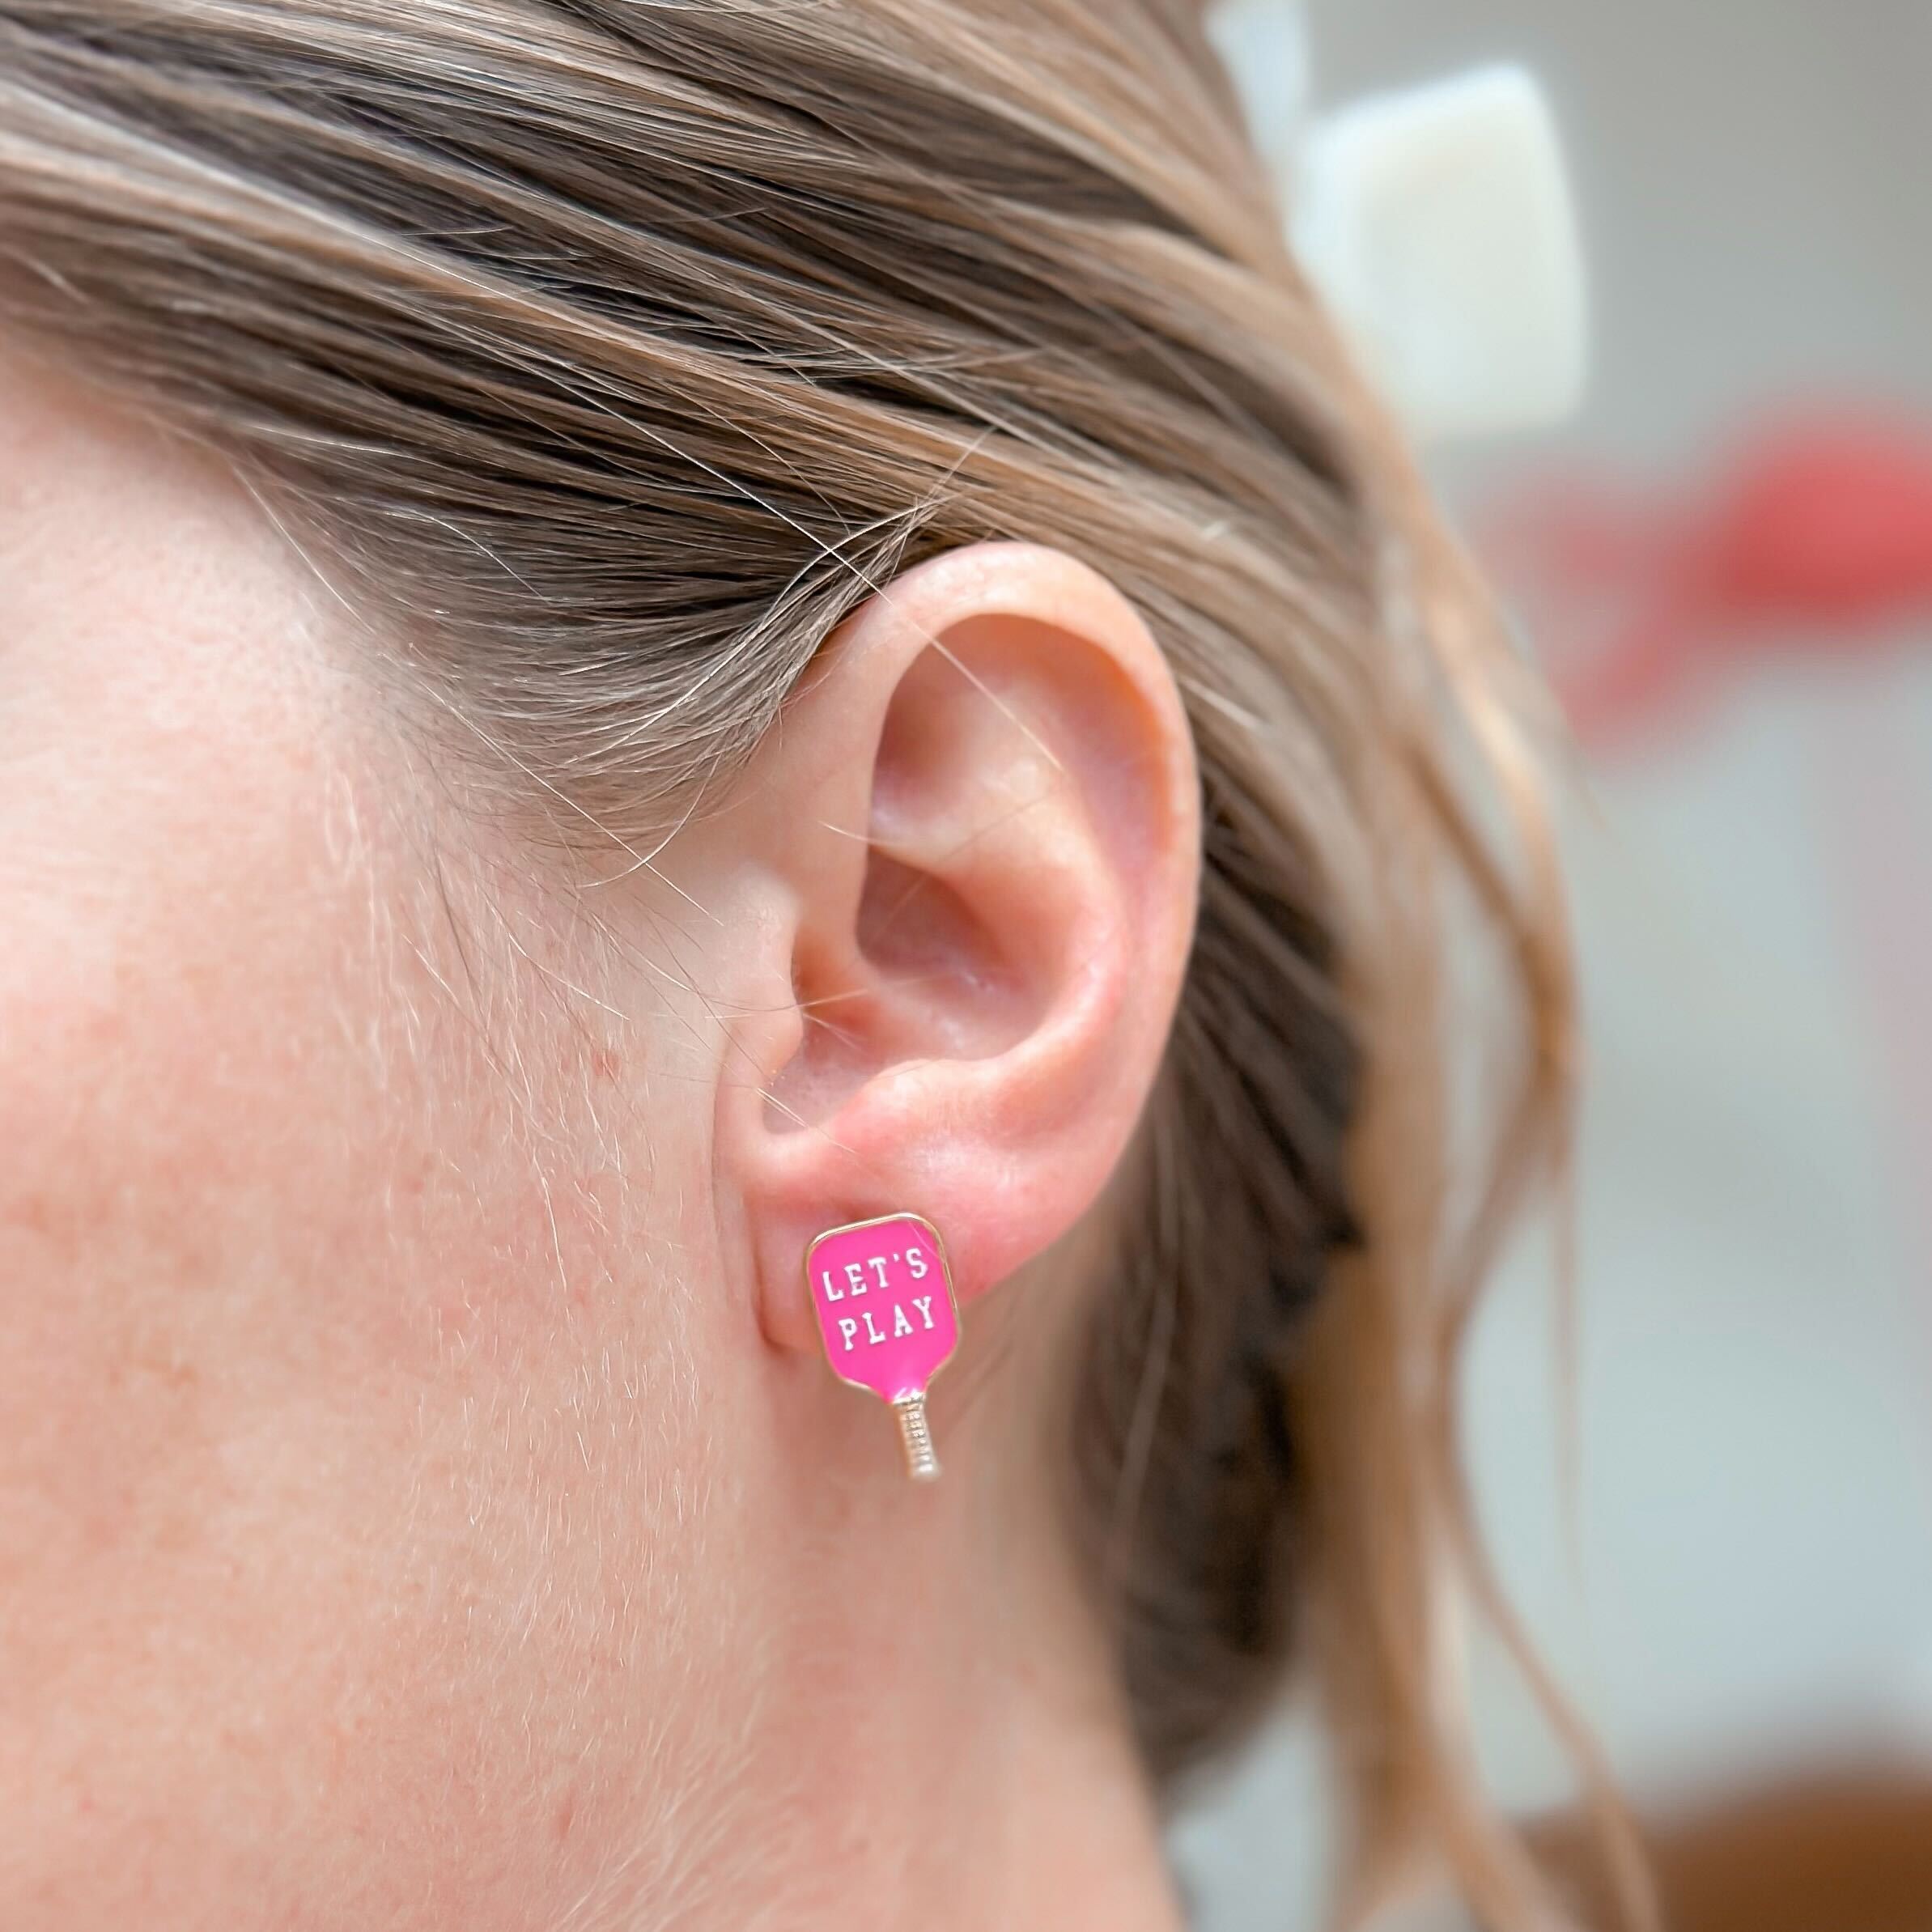 Enamel Hot Pink Pickleball Stud Earrings - 'Let's Play'